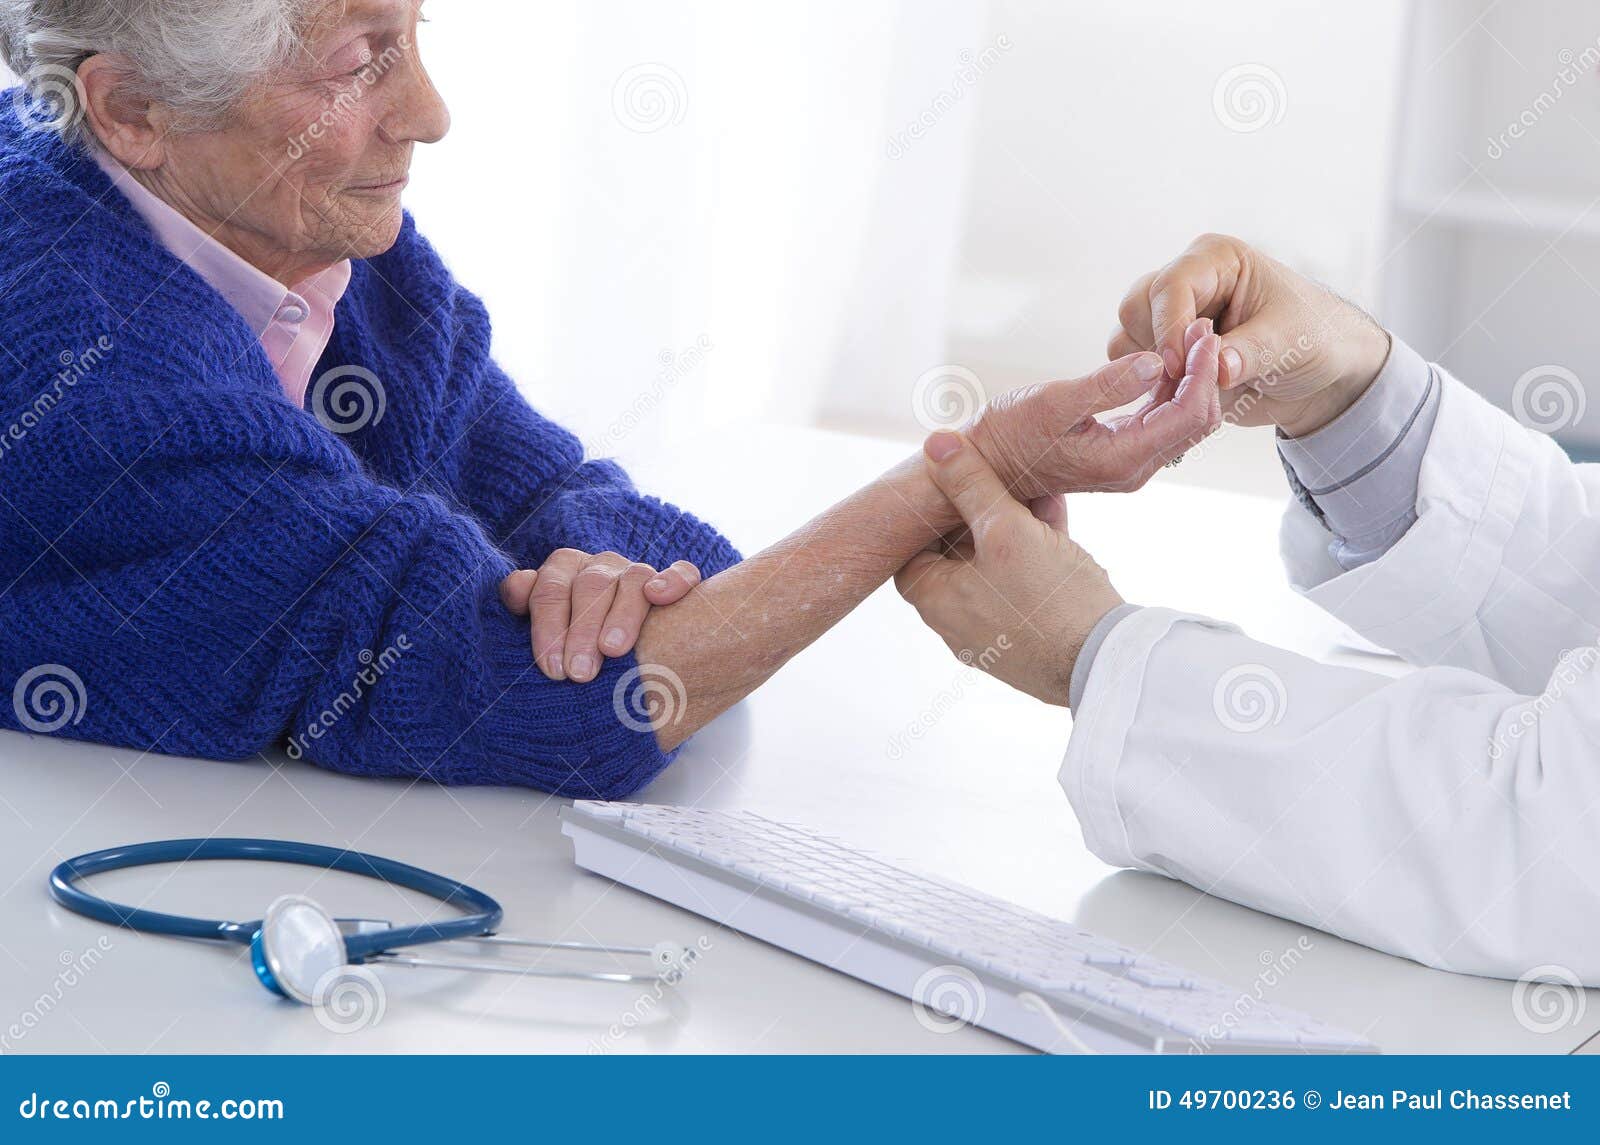 auscultation senior woman for wrist pain